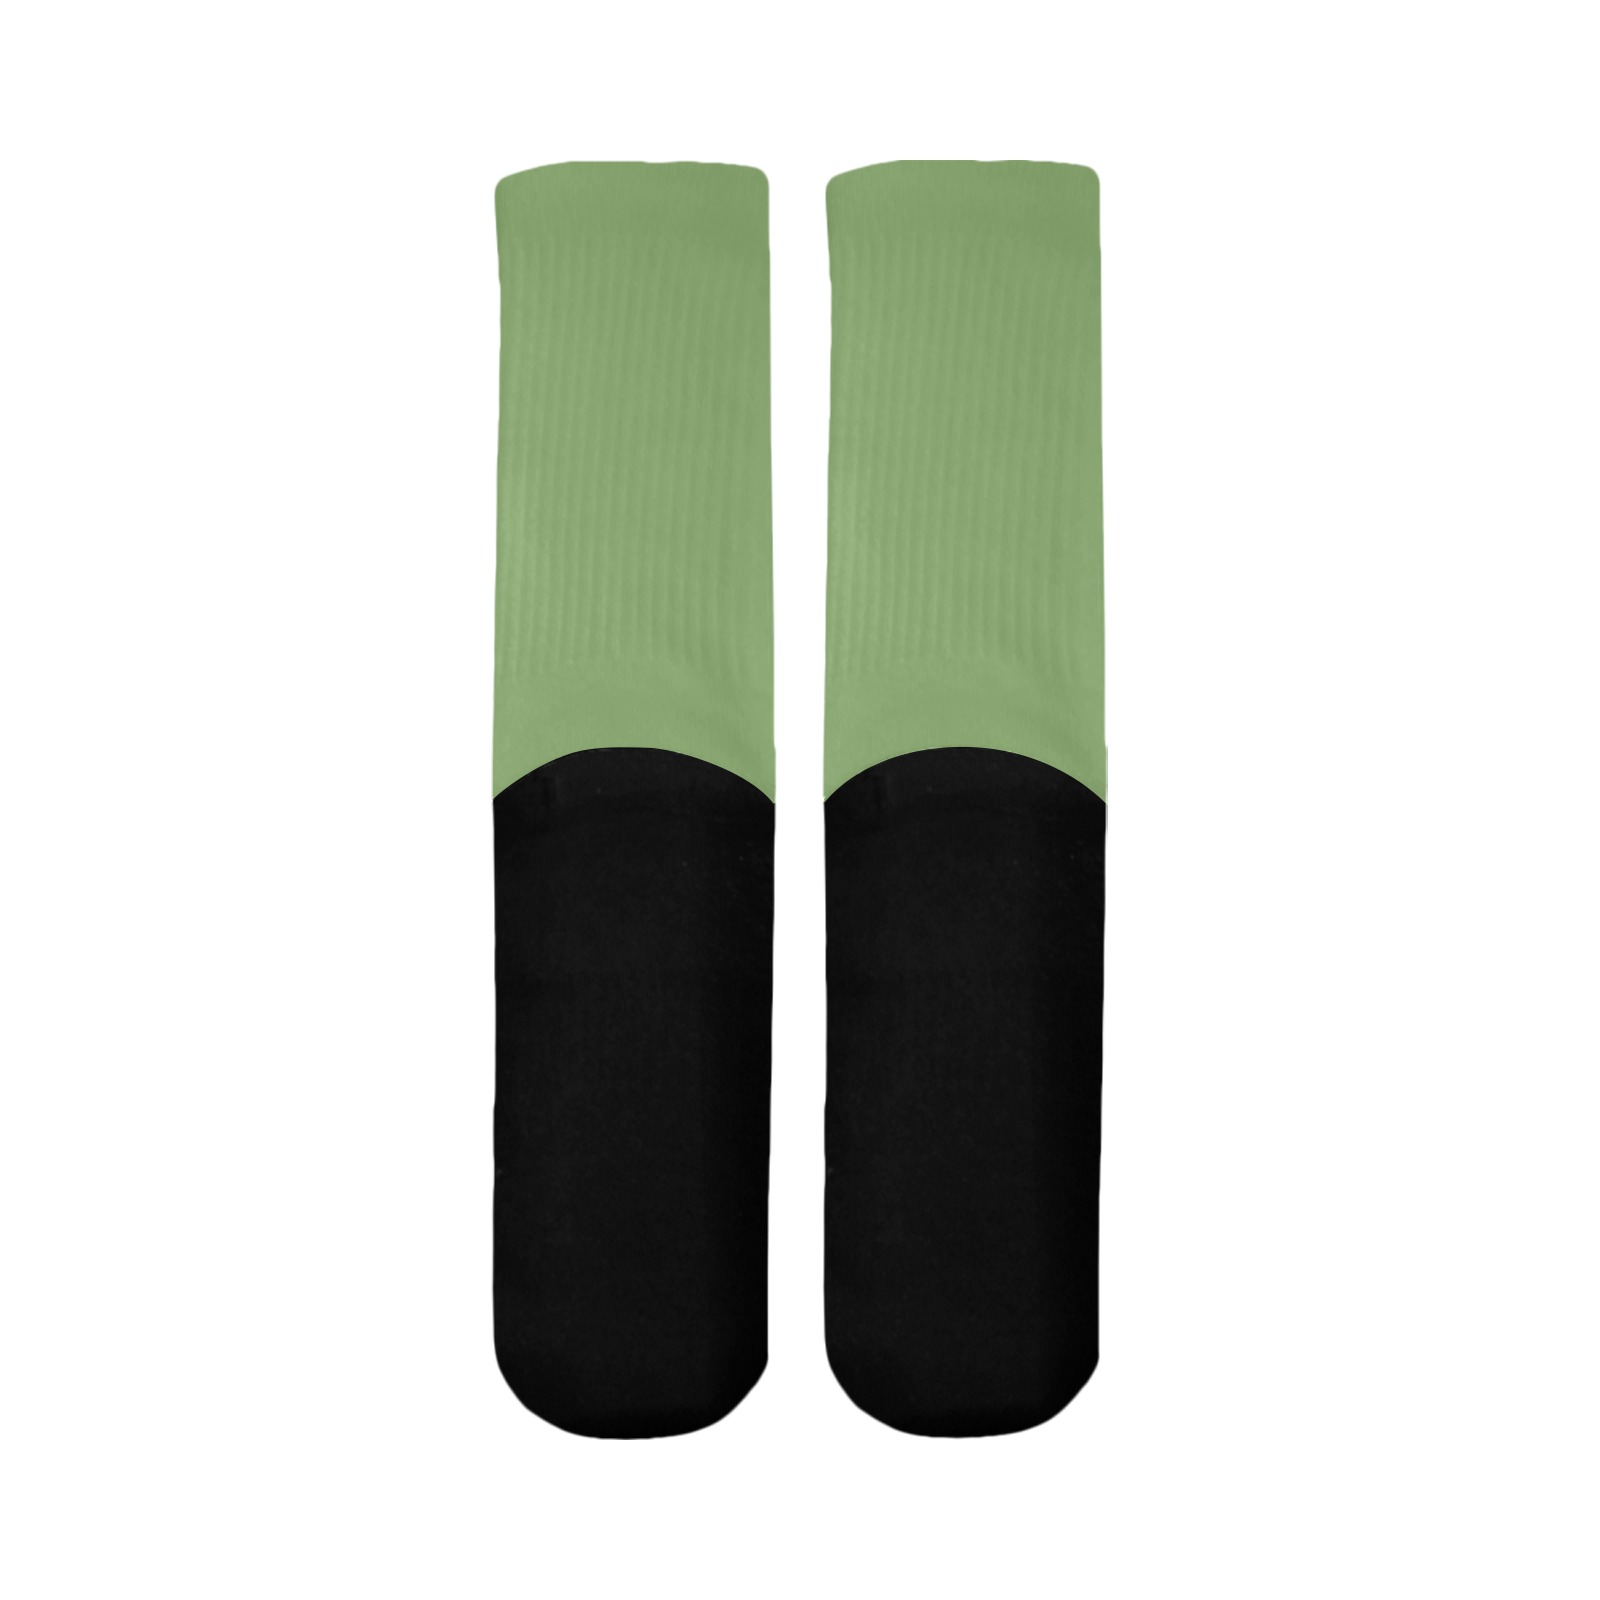 color asparagus Mid-Calf Socks (Black Sole)